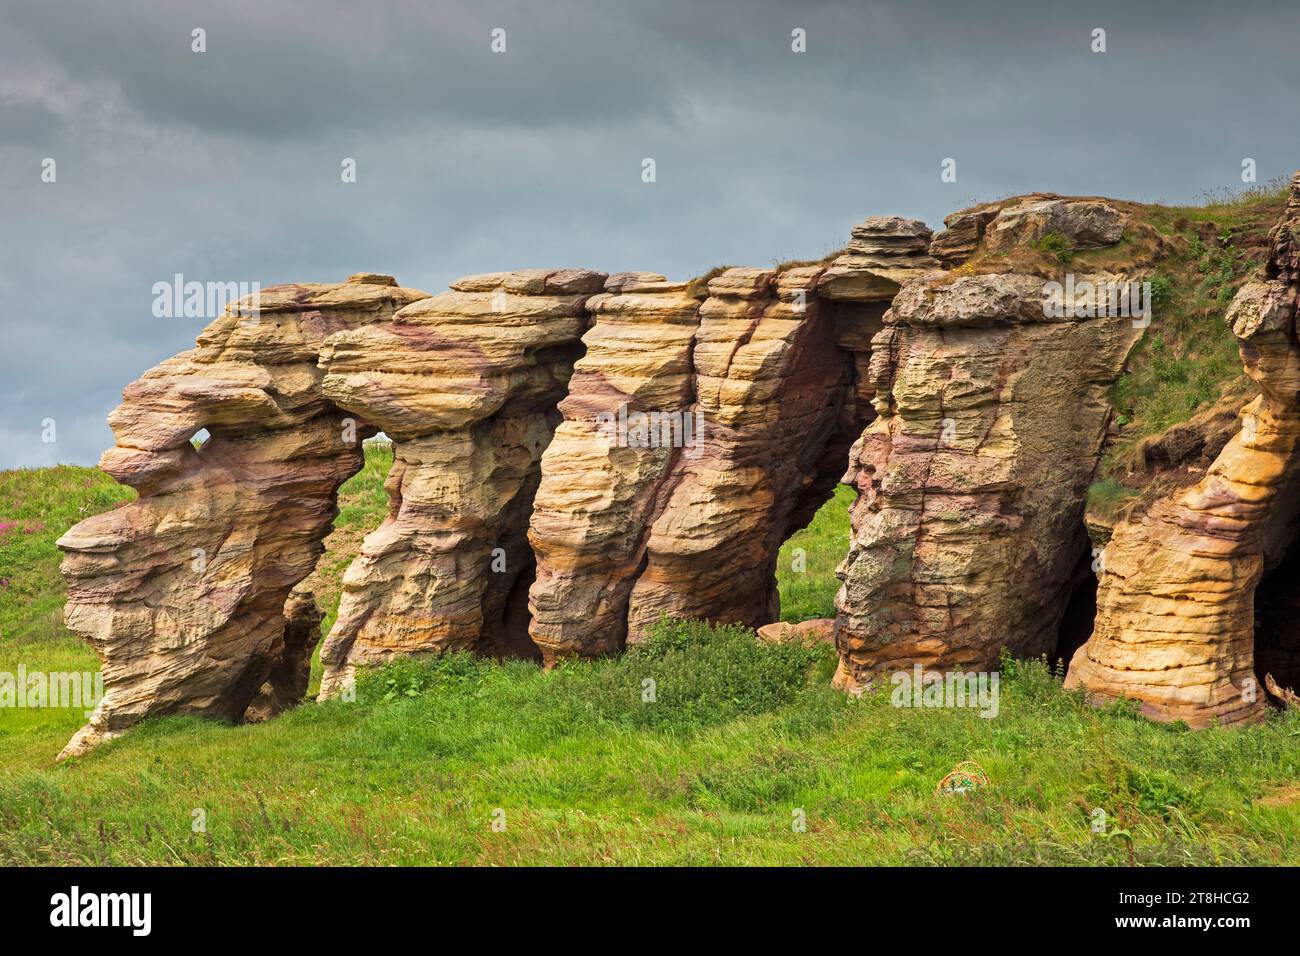 Grottes de Caiplie et formation rocheuse, promenade côtière de Fife, entre Crail et Anstruther, Fife, Écosse, Royaume-Uni Banque D'Images